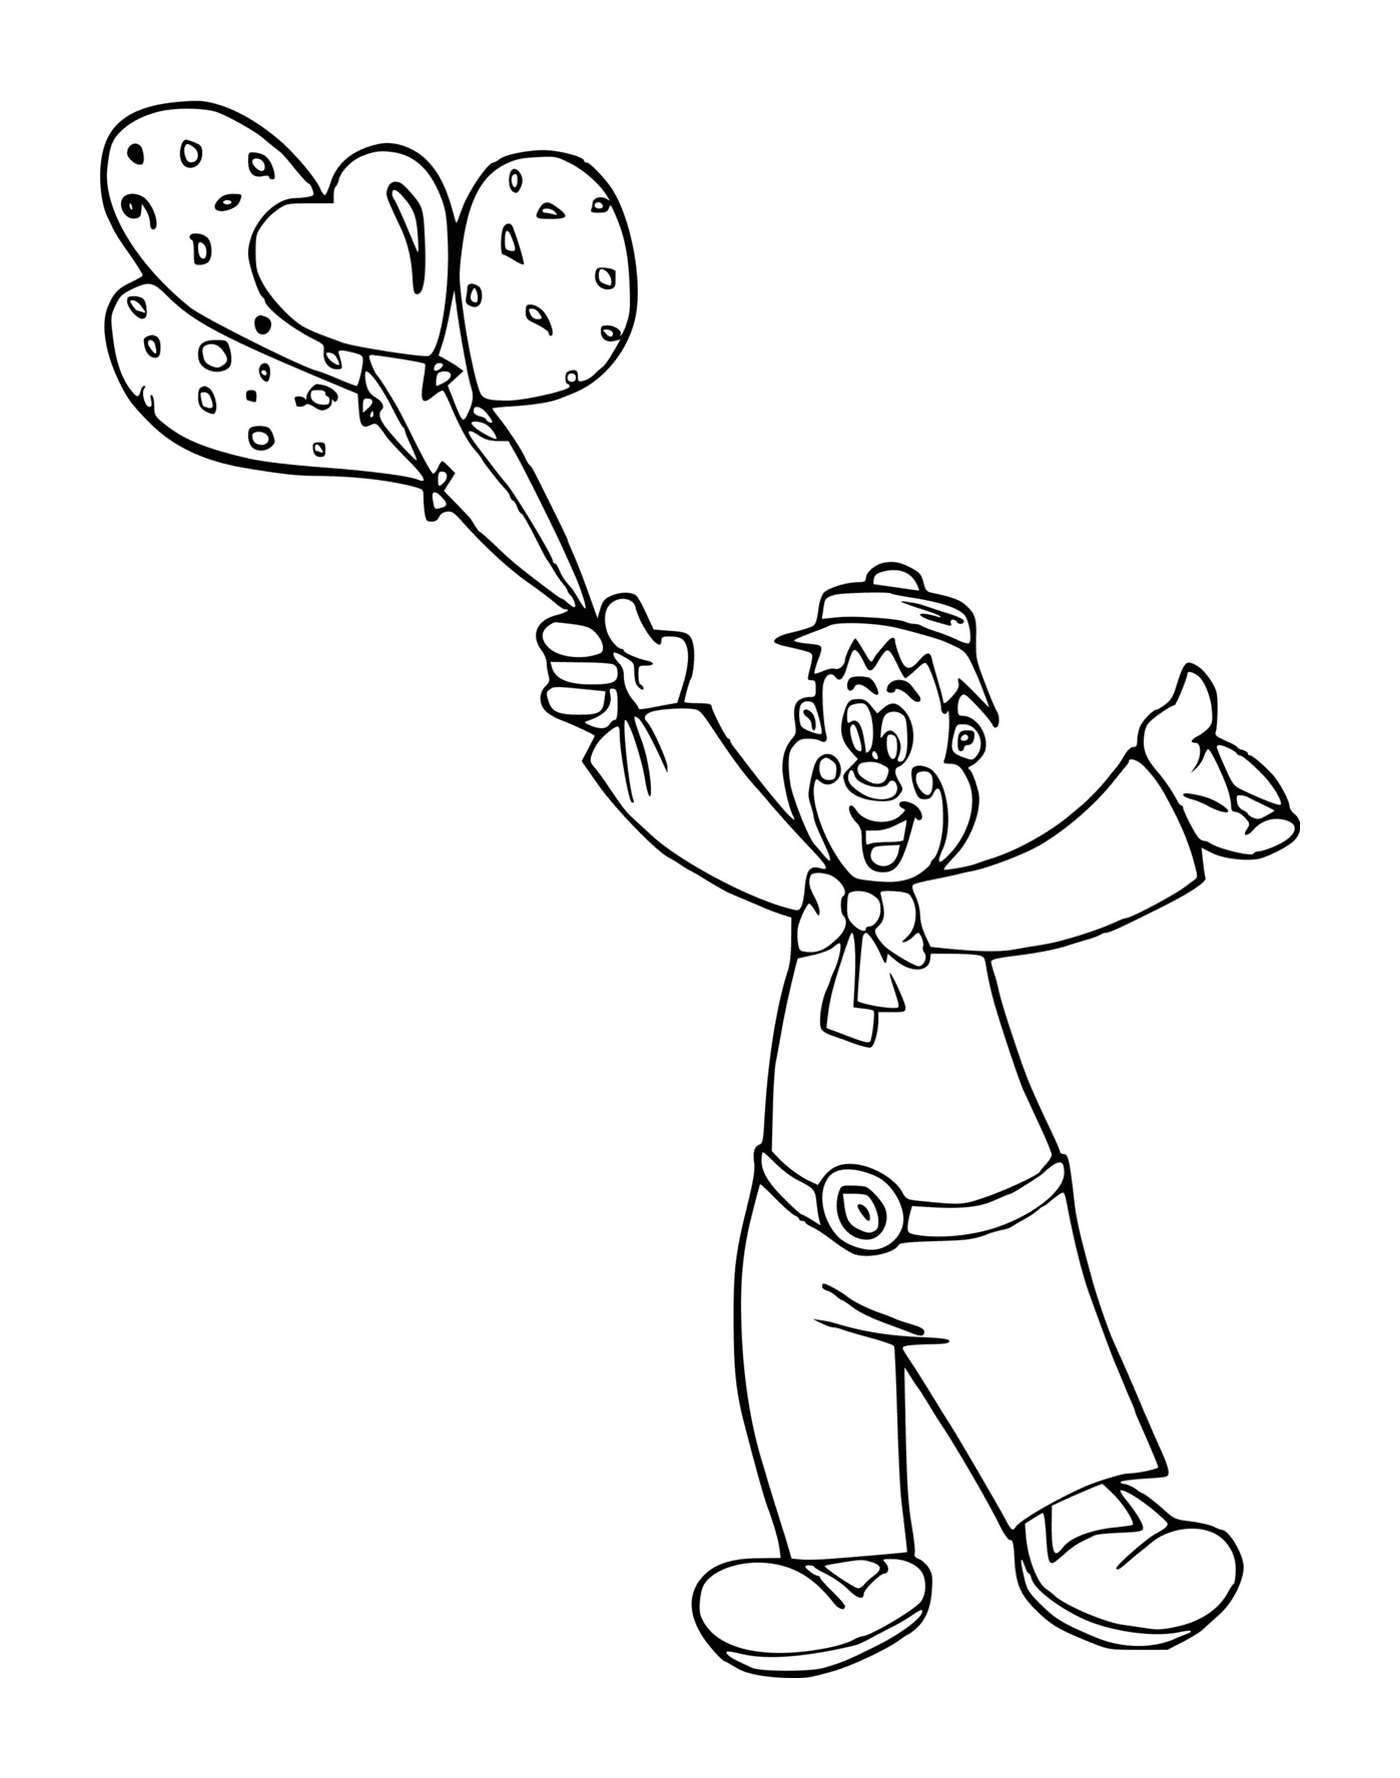  Clownesque balloon seller 